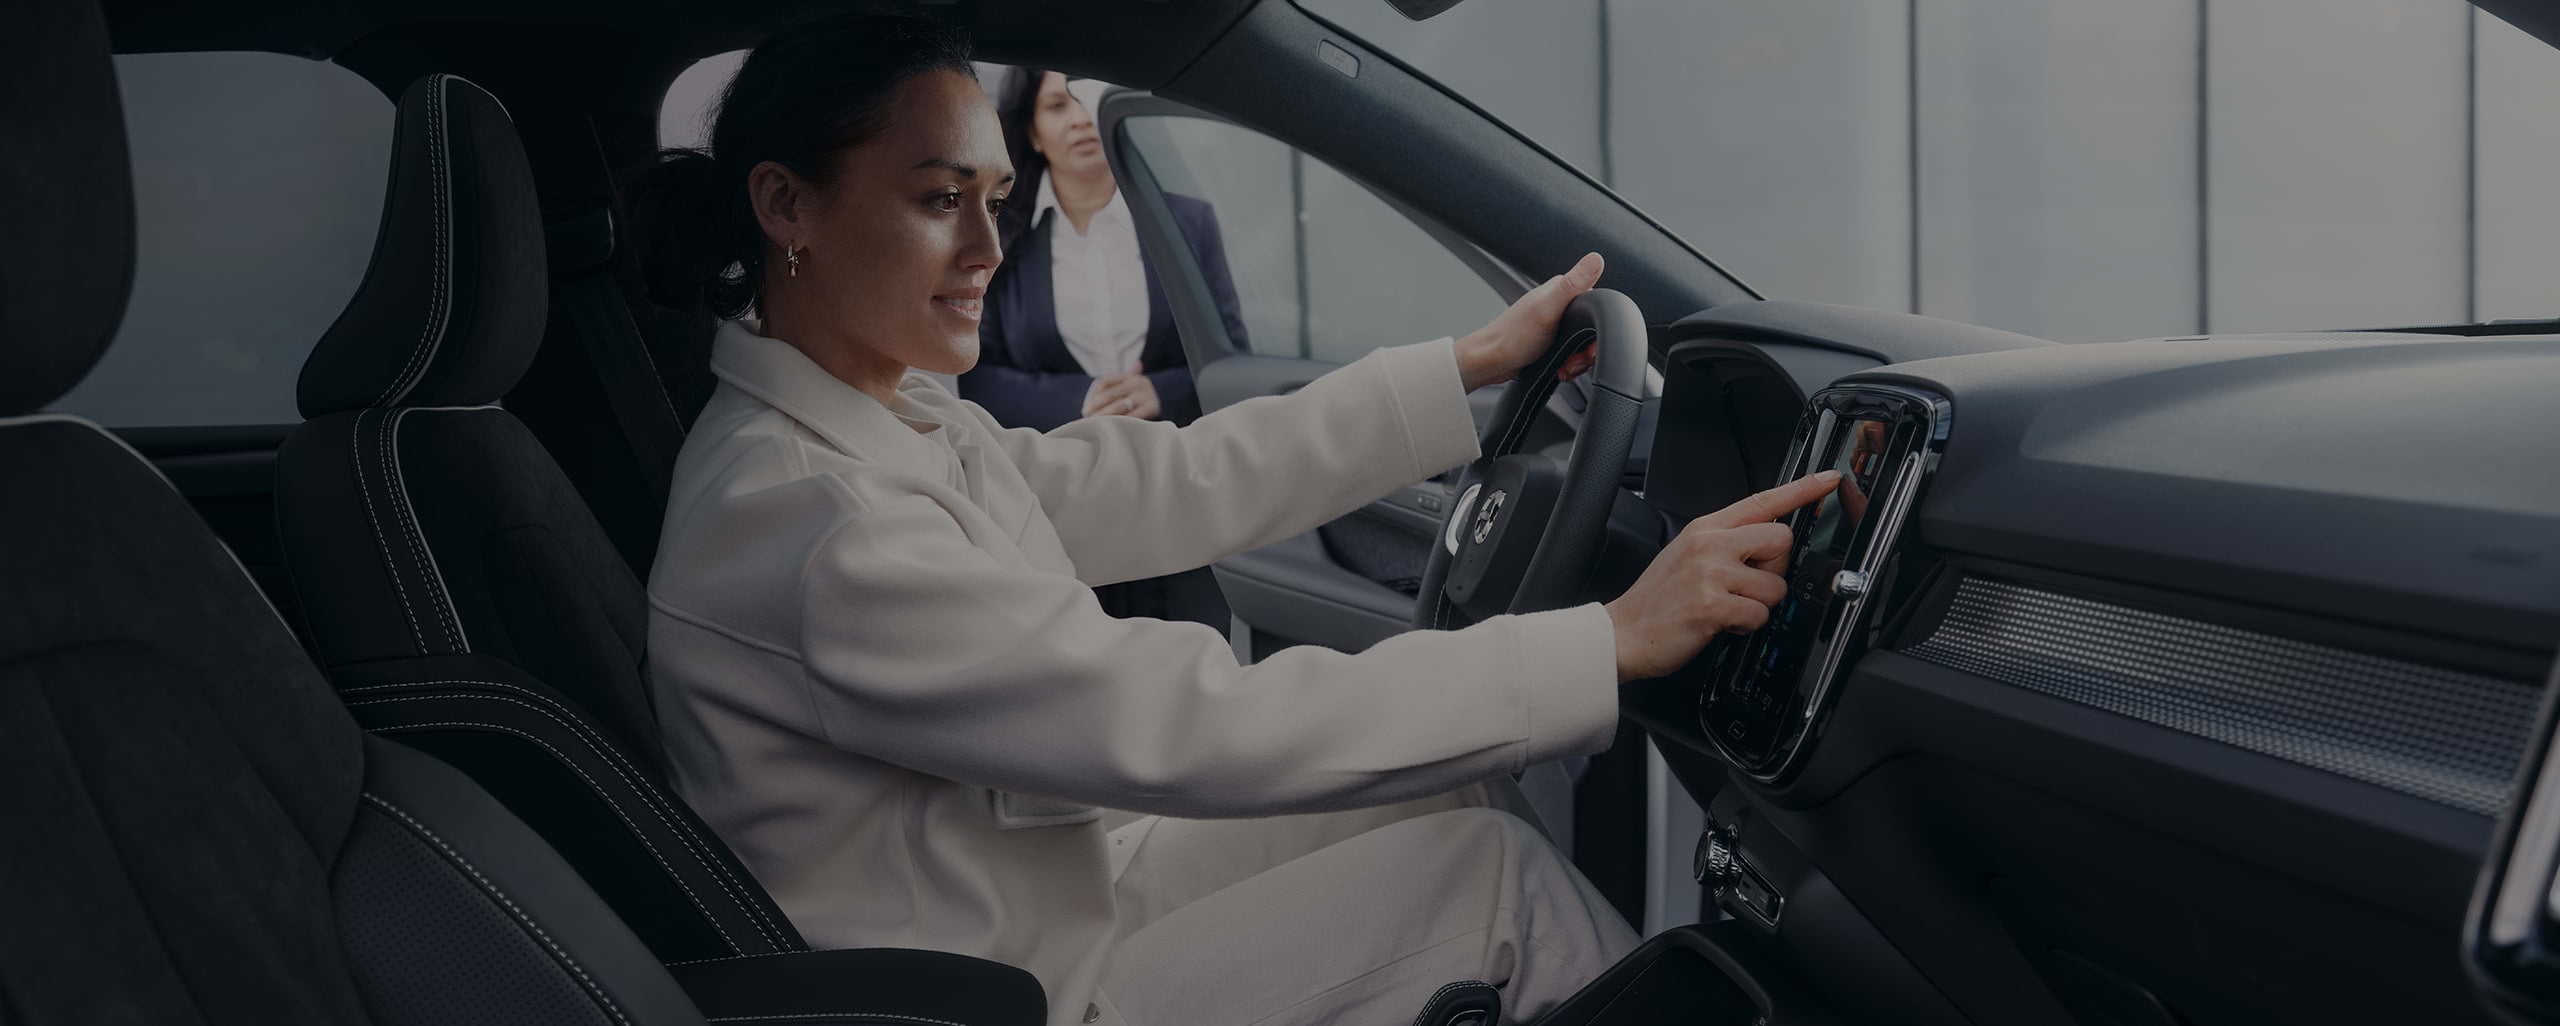 Unter den Augen einer Verkäuferin sitzt eine junge Frau lächelnd auf dem Fahrersitz und berührt die Mittelkonsole eines Volvo.